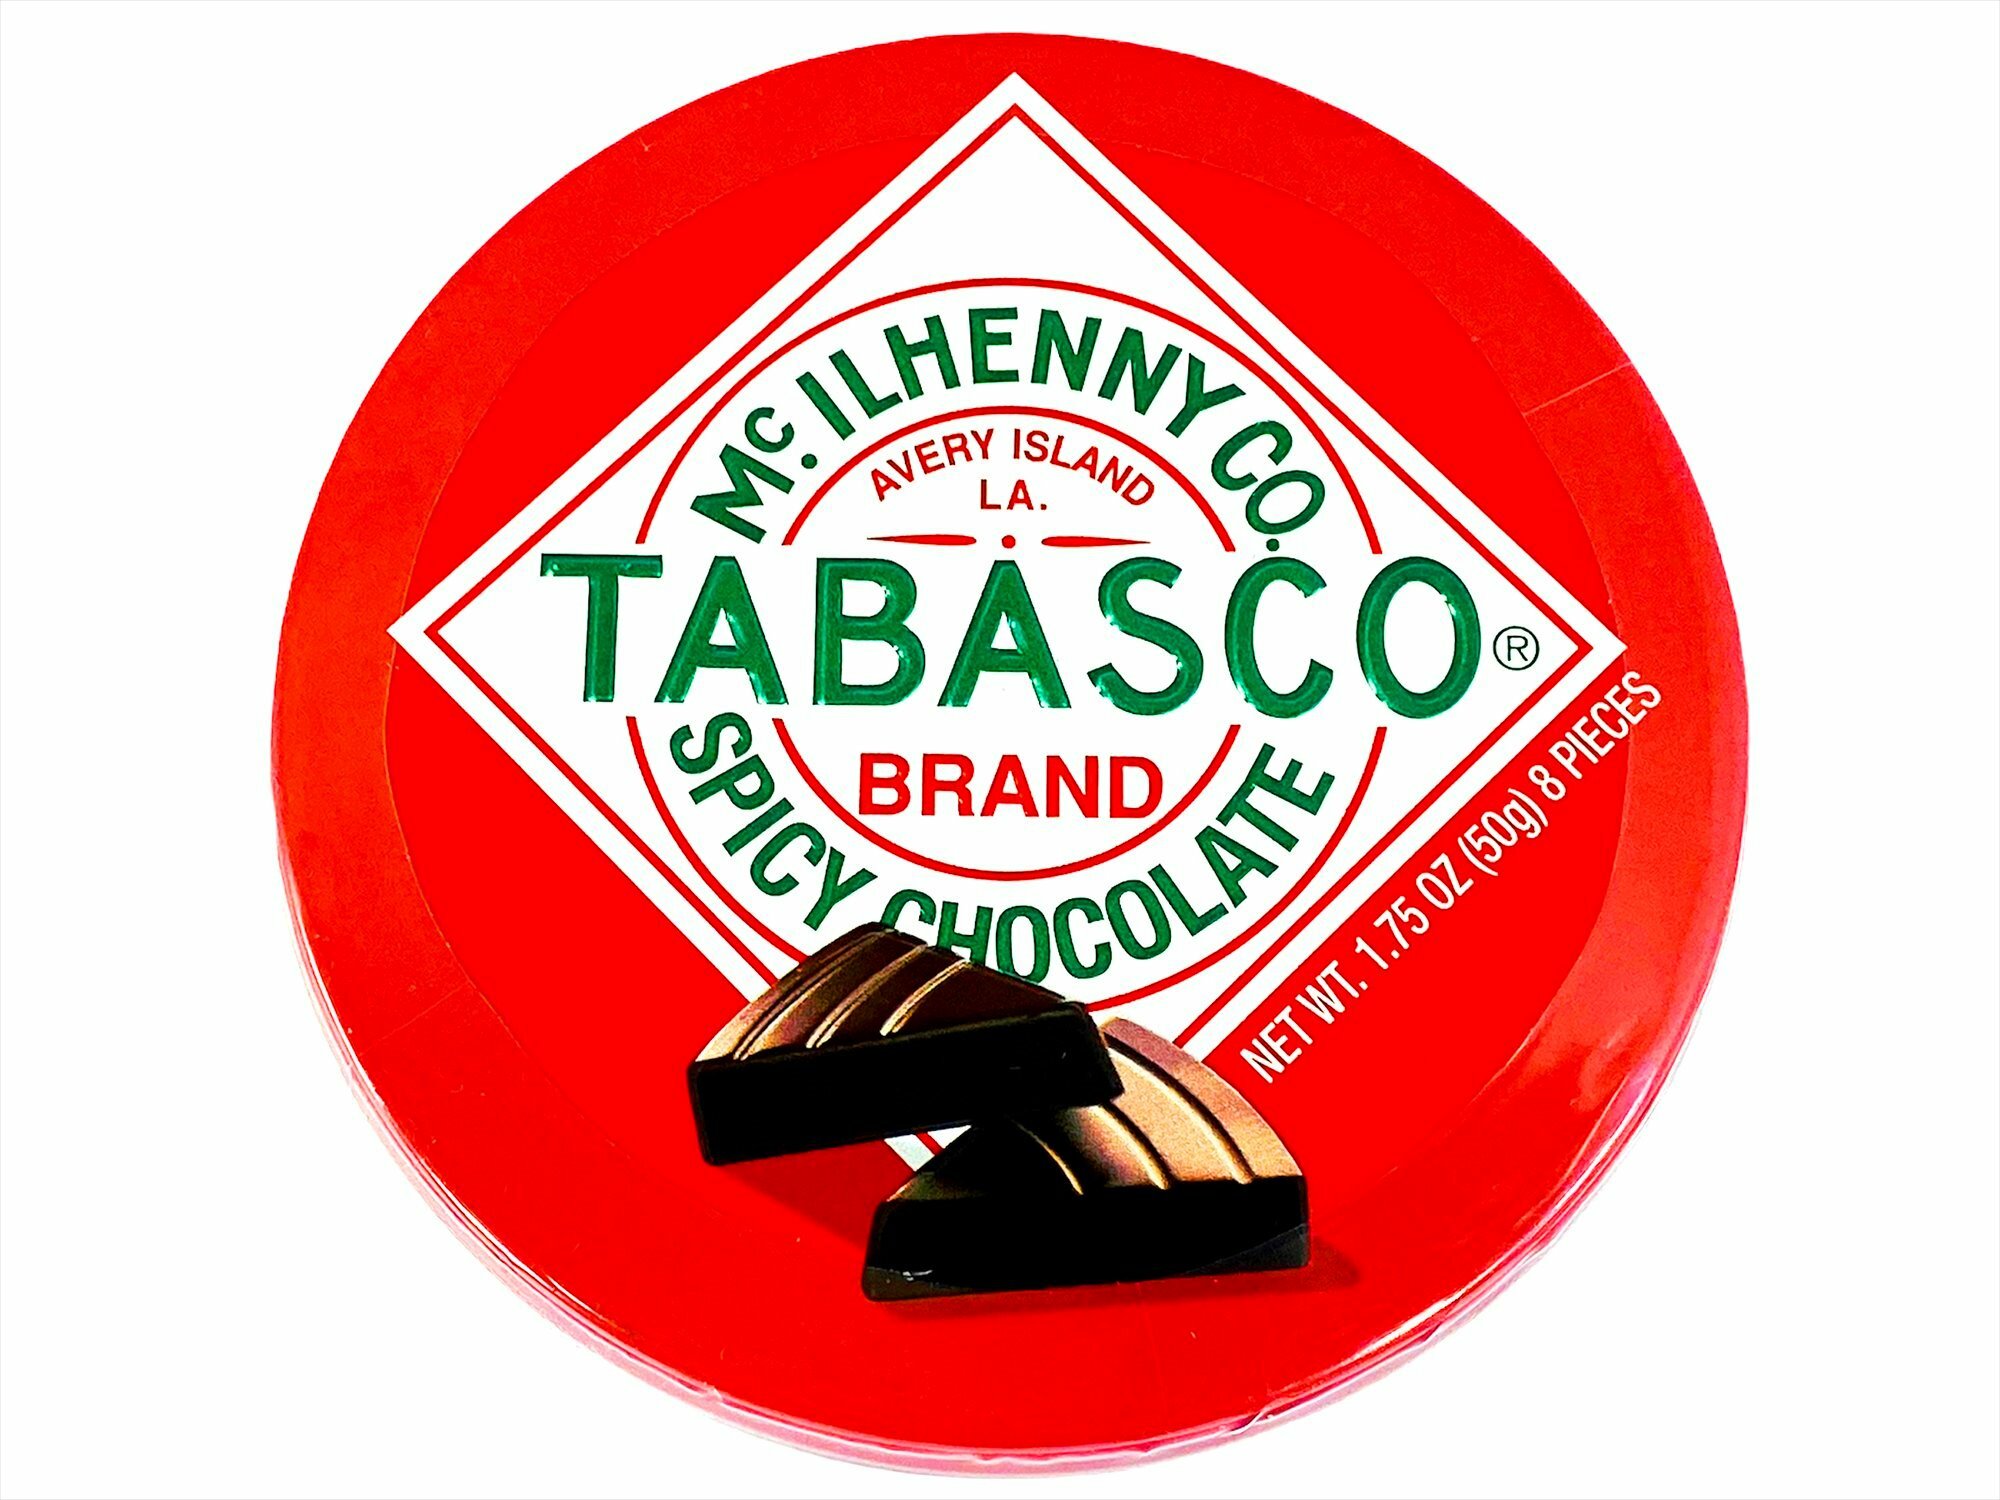 Mc.Ilhenny Co TABASCO Brand Spicy Chocolate